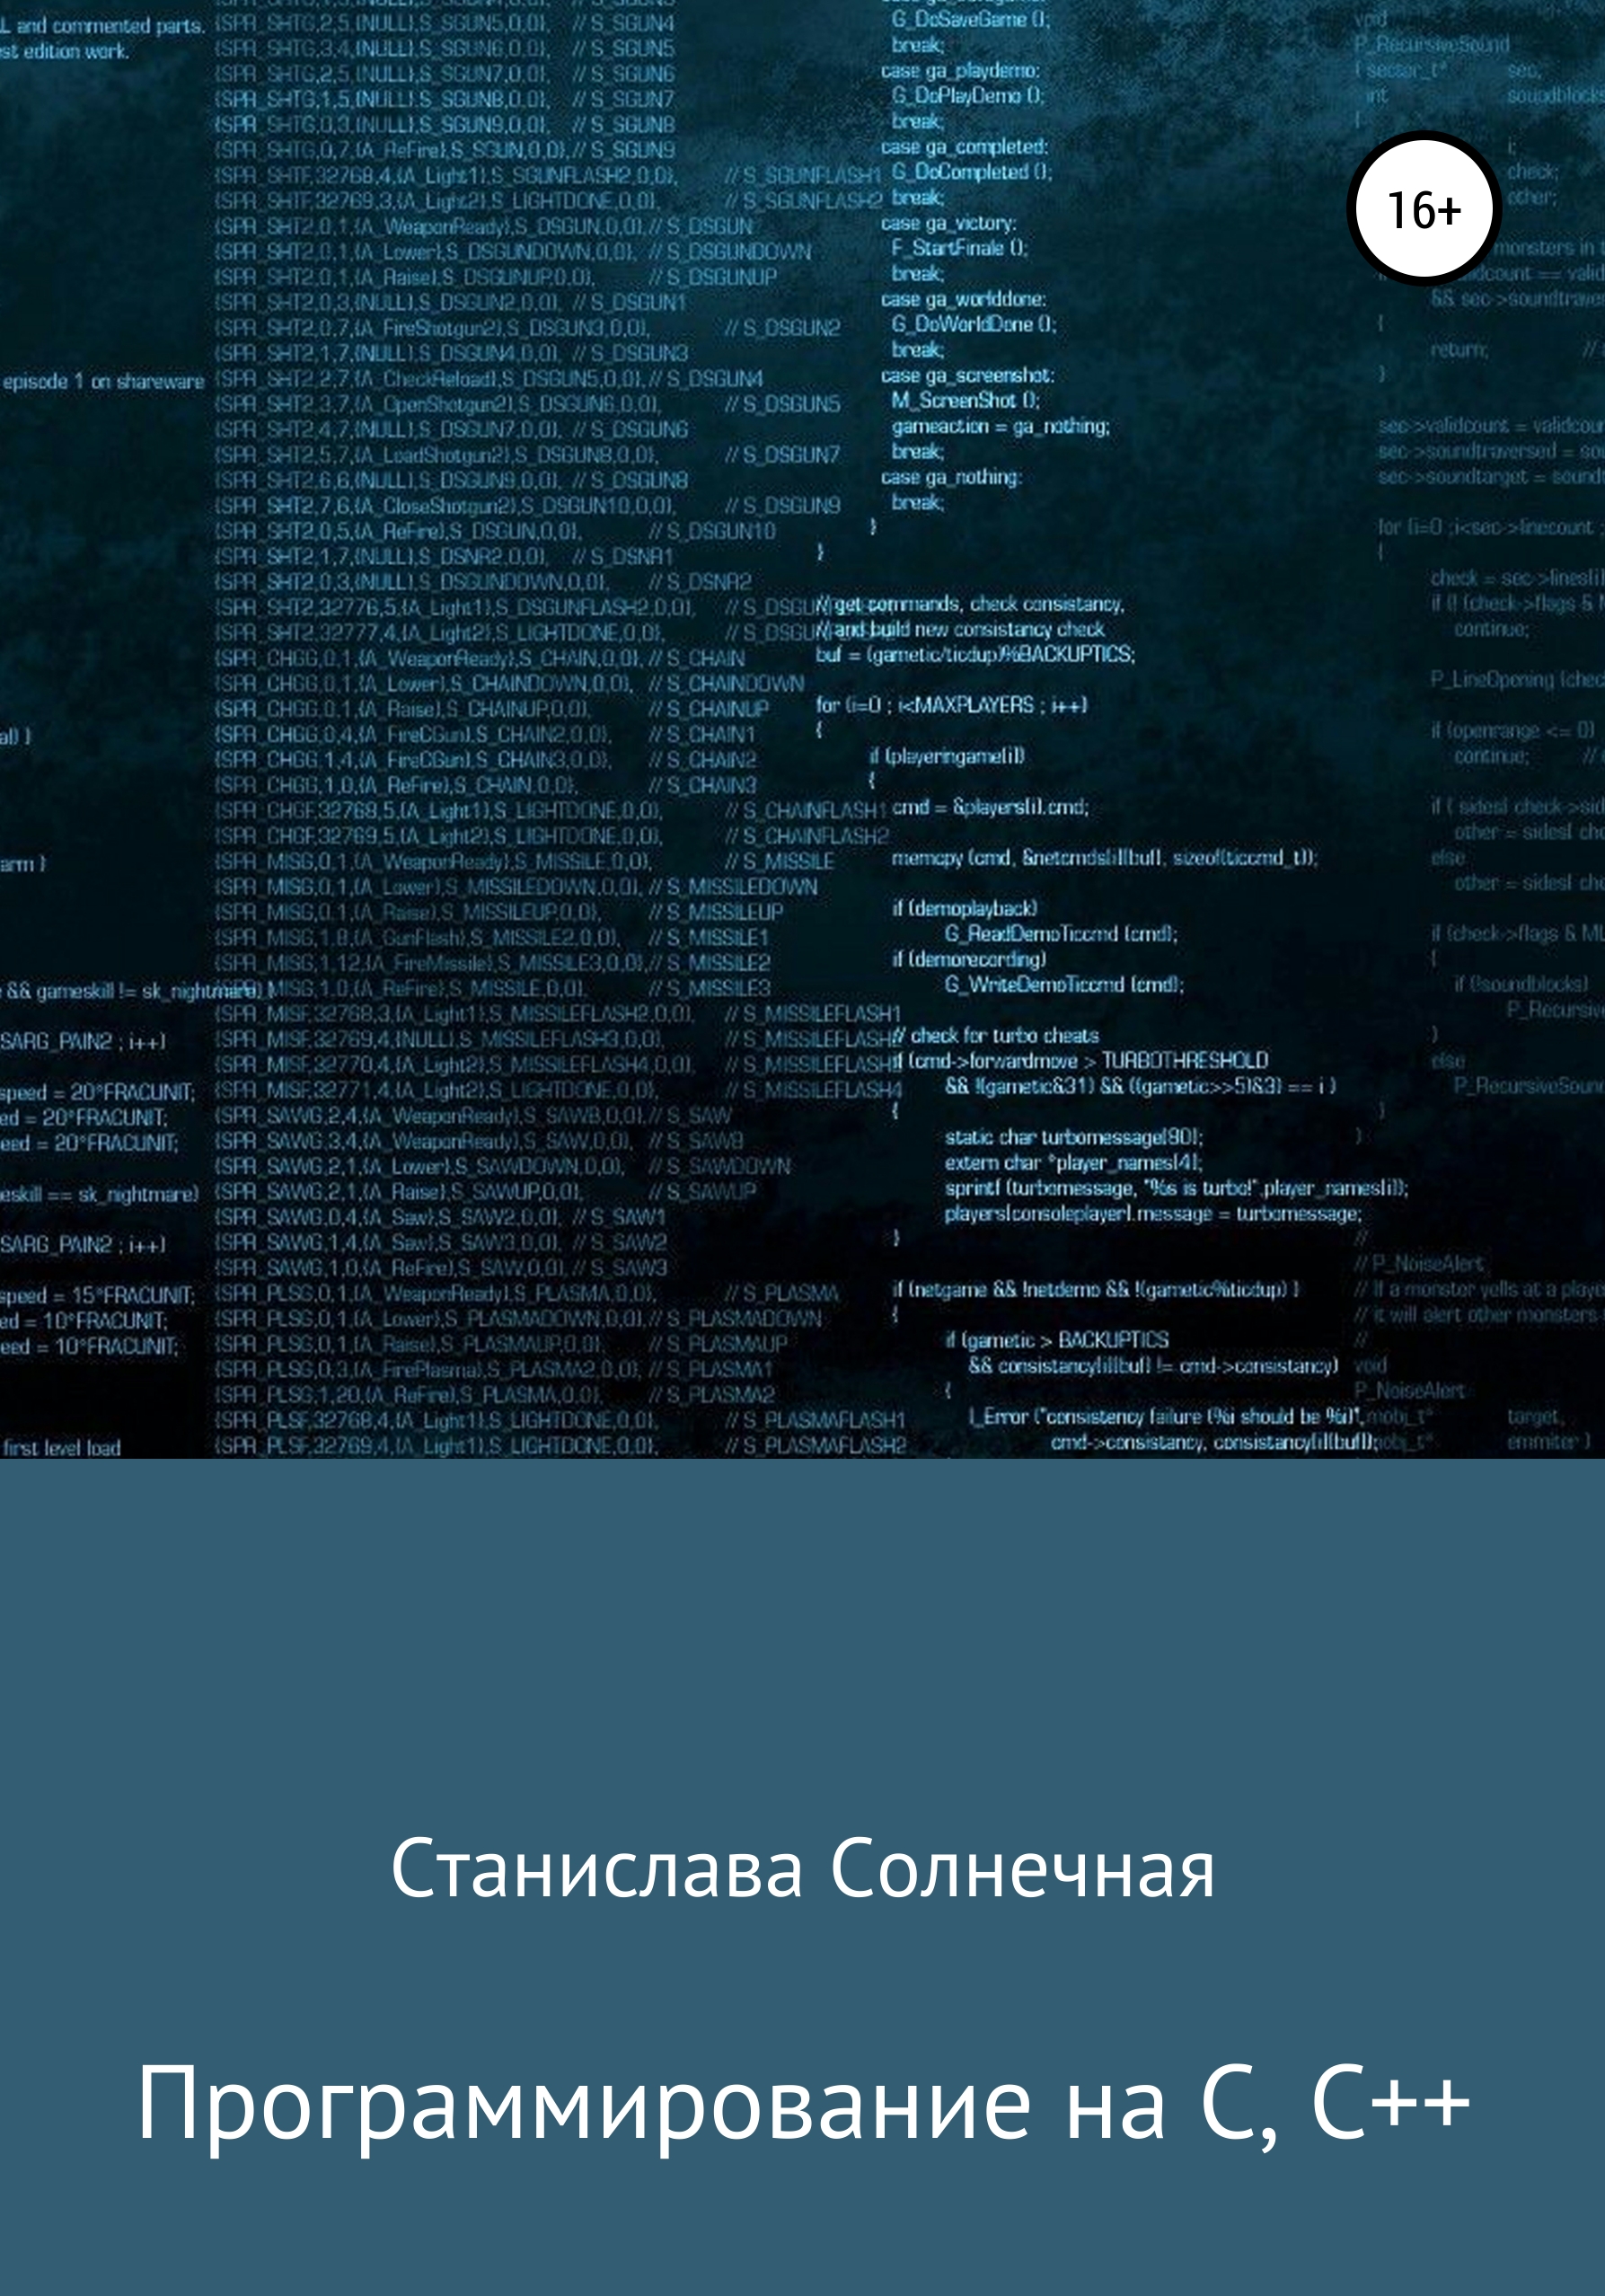 Книга  Программирование на С, С++ созданная Станислава Солнечная может относится к жанру программирование. Стоимость электронной книги Программирование на С, С++ с идентификатором 57209743 составляет 690.00 руб.